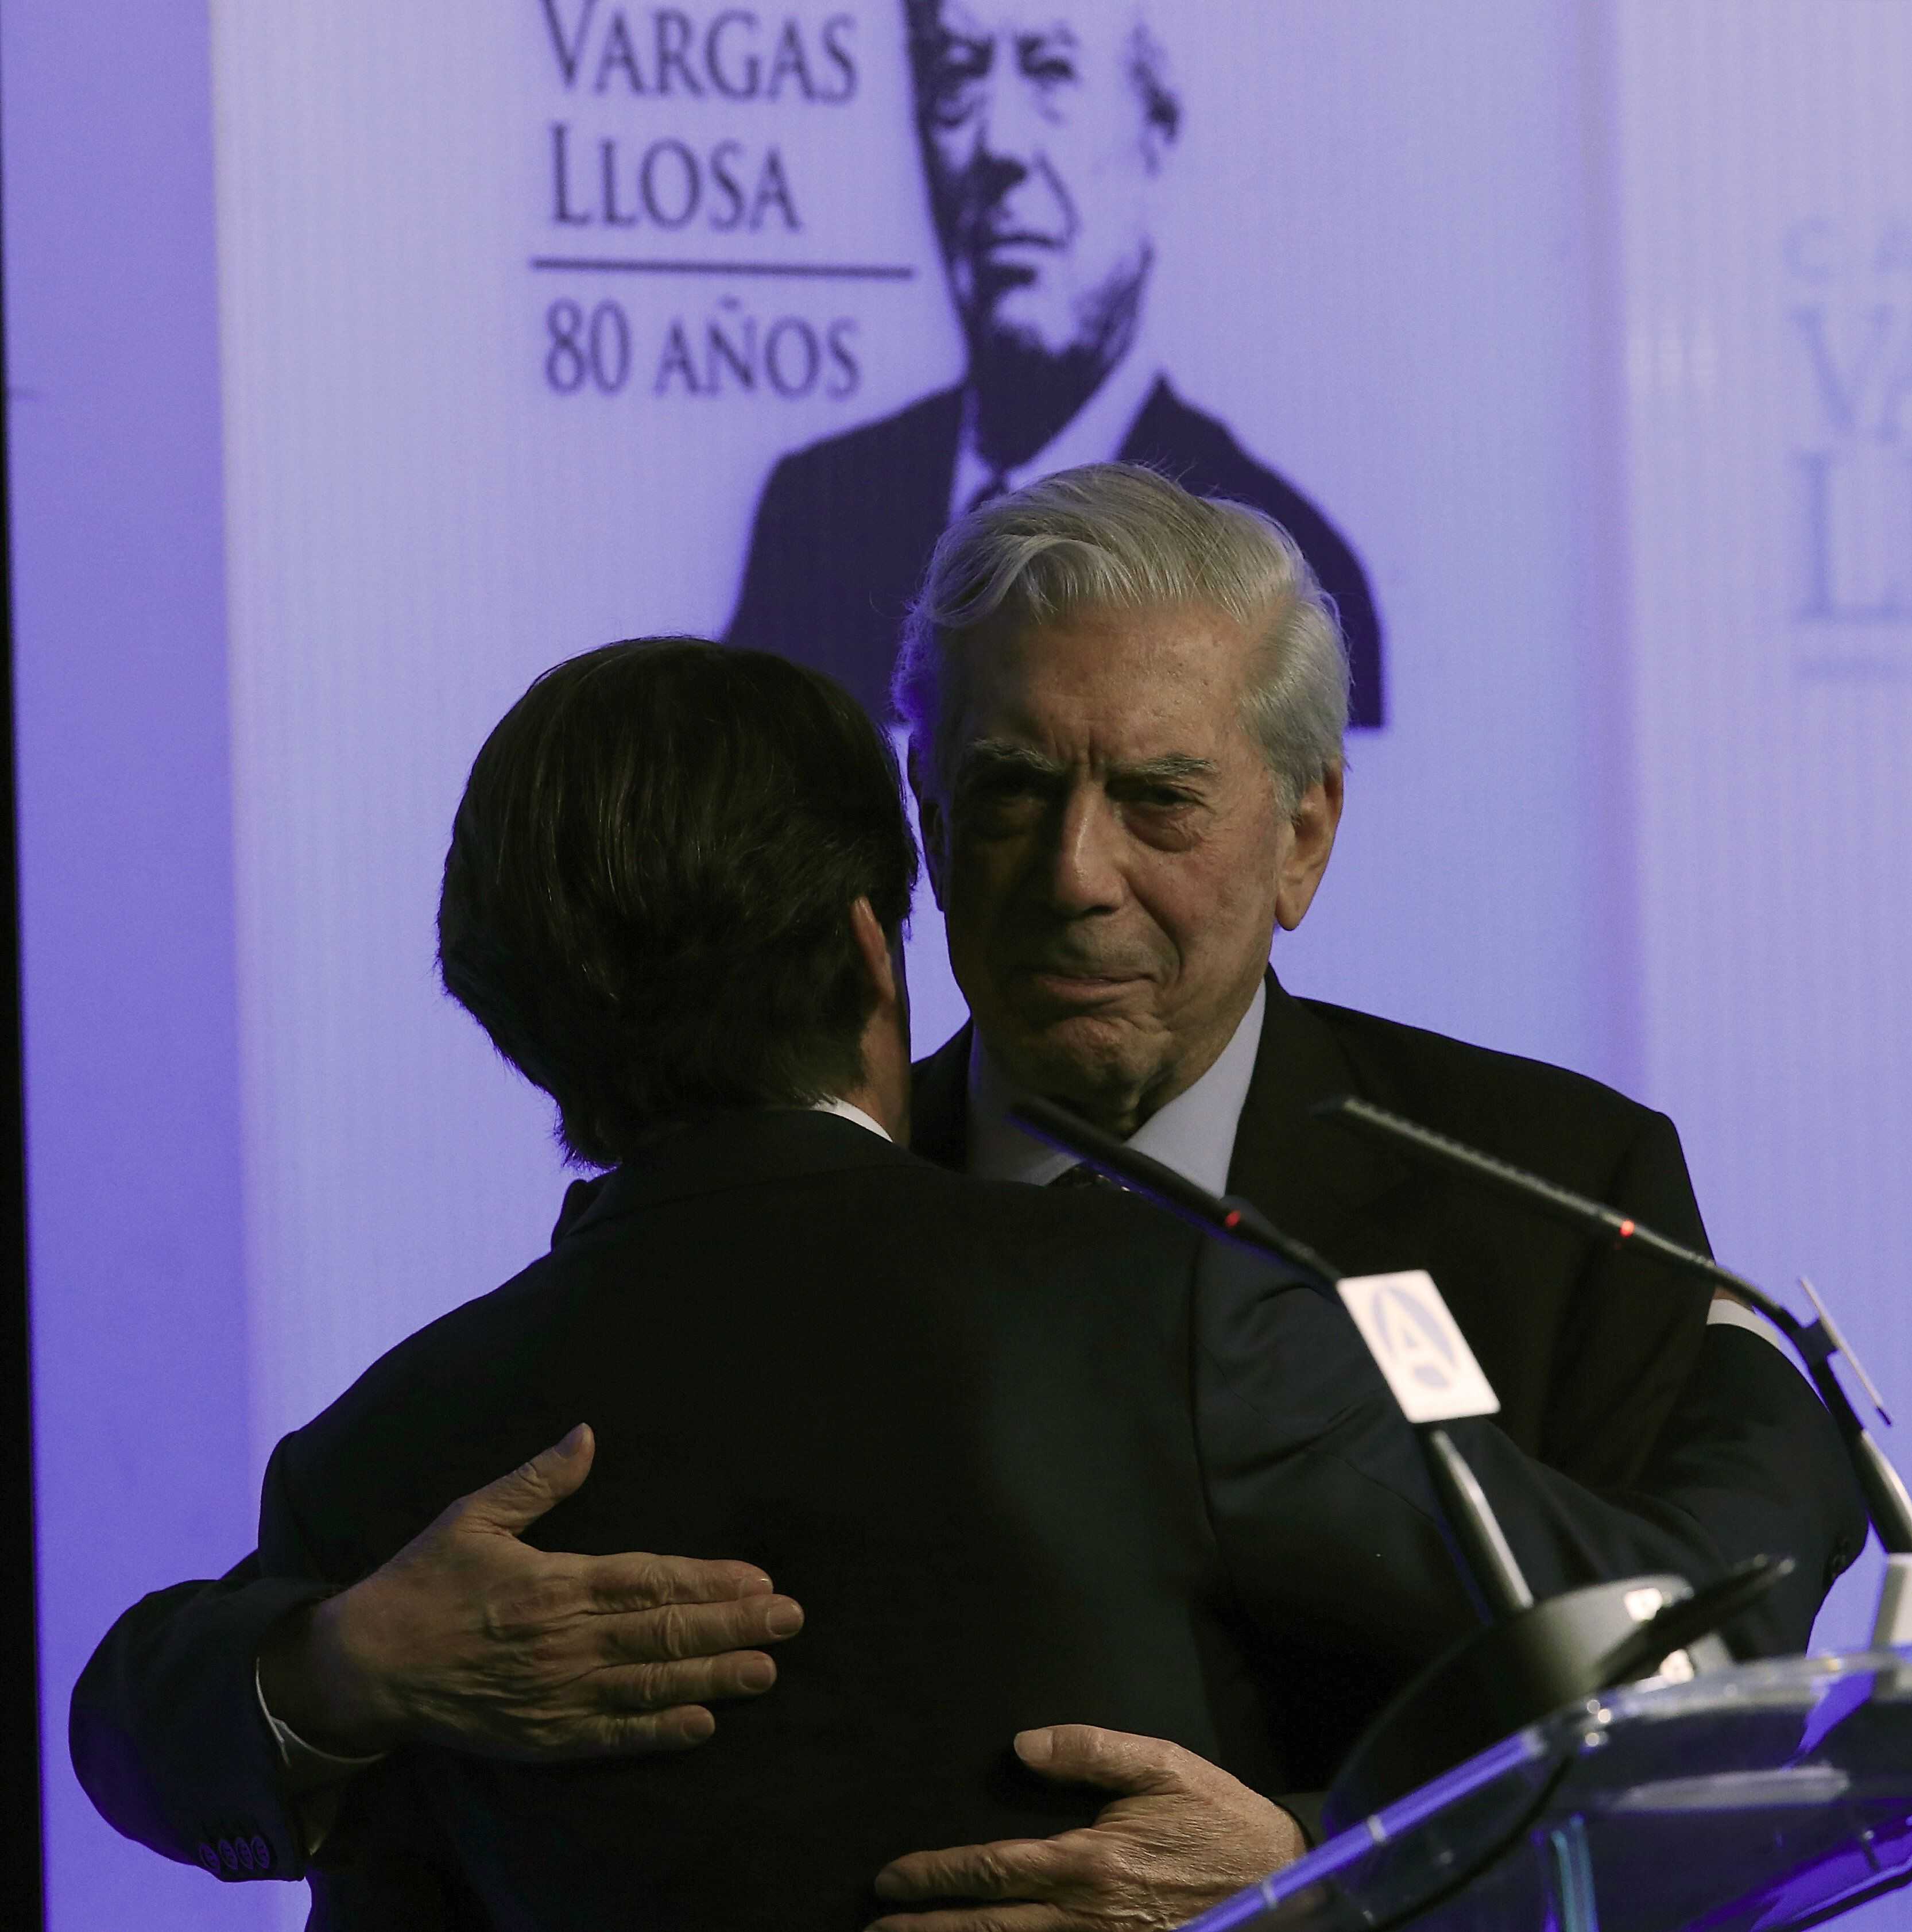 Vargas Llosa va dissoldre la seva 'offshore' abans de rebre el Nobel